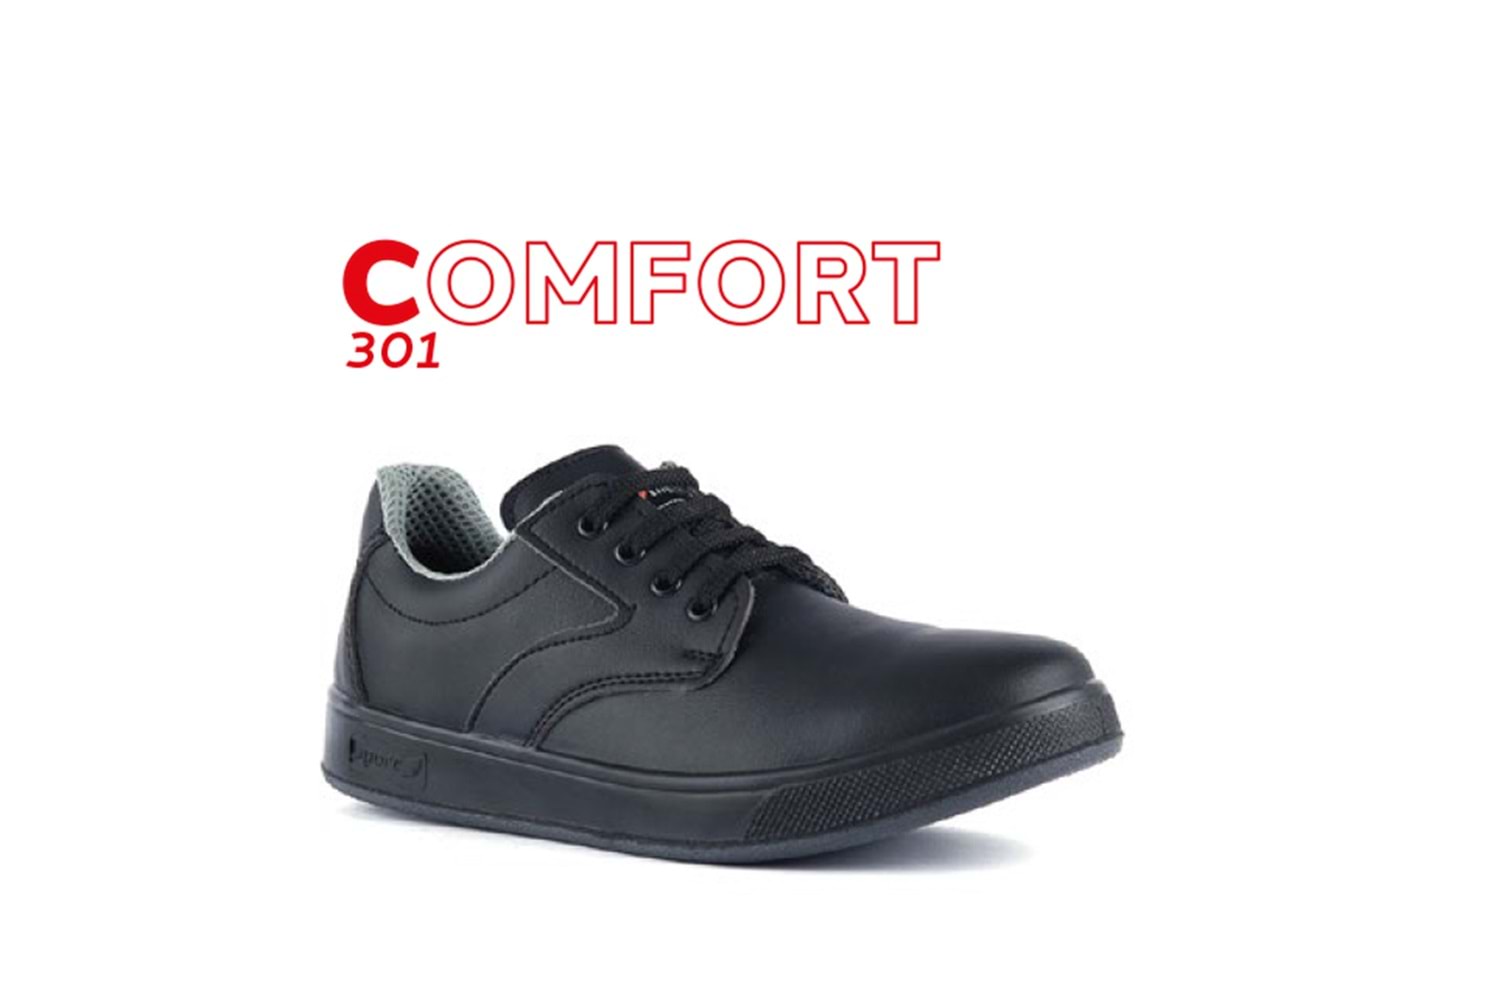 Mekap İş Ayakkabısı - Comfort 301 Black